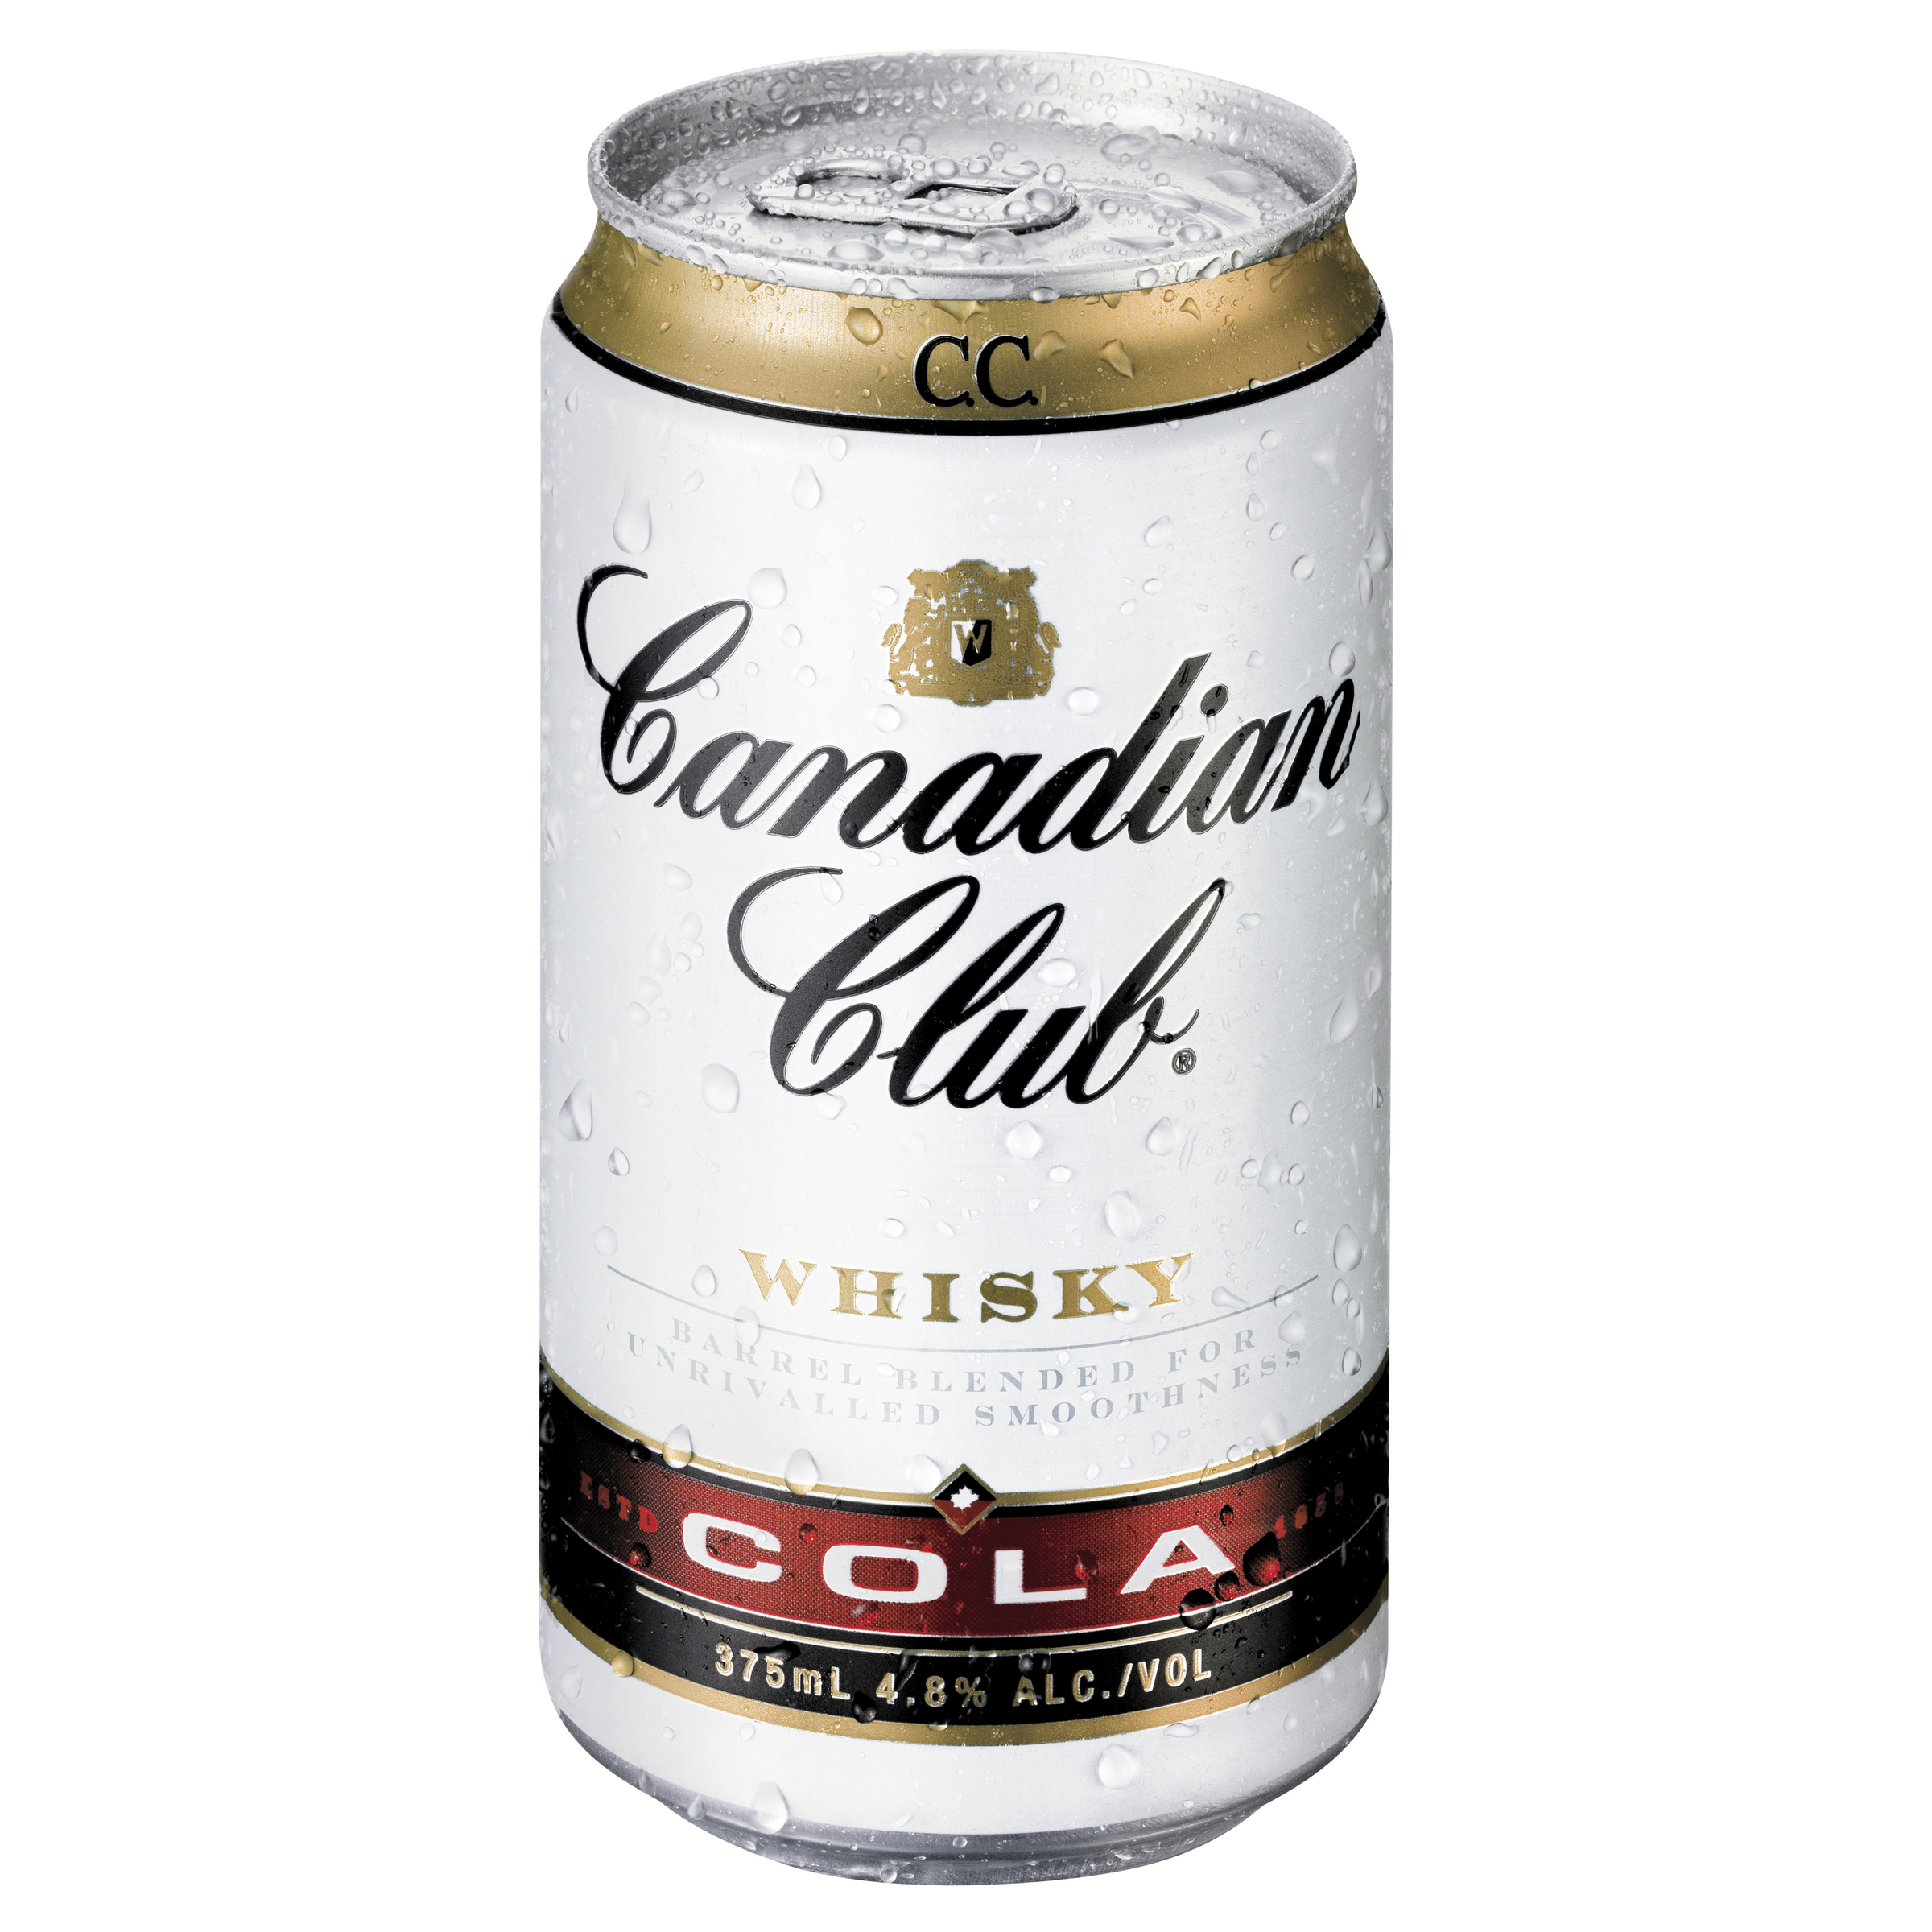 CANADIAN CLUB & COLA